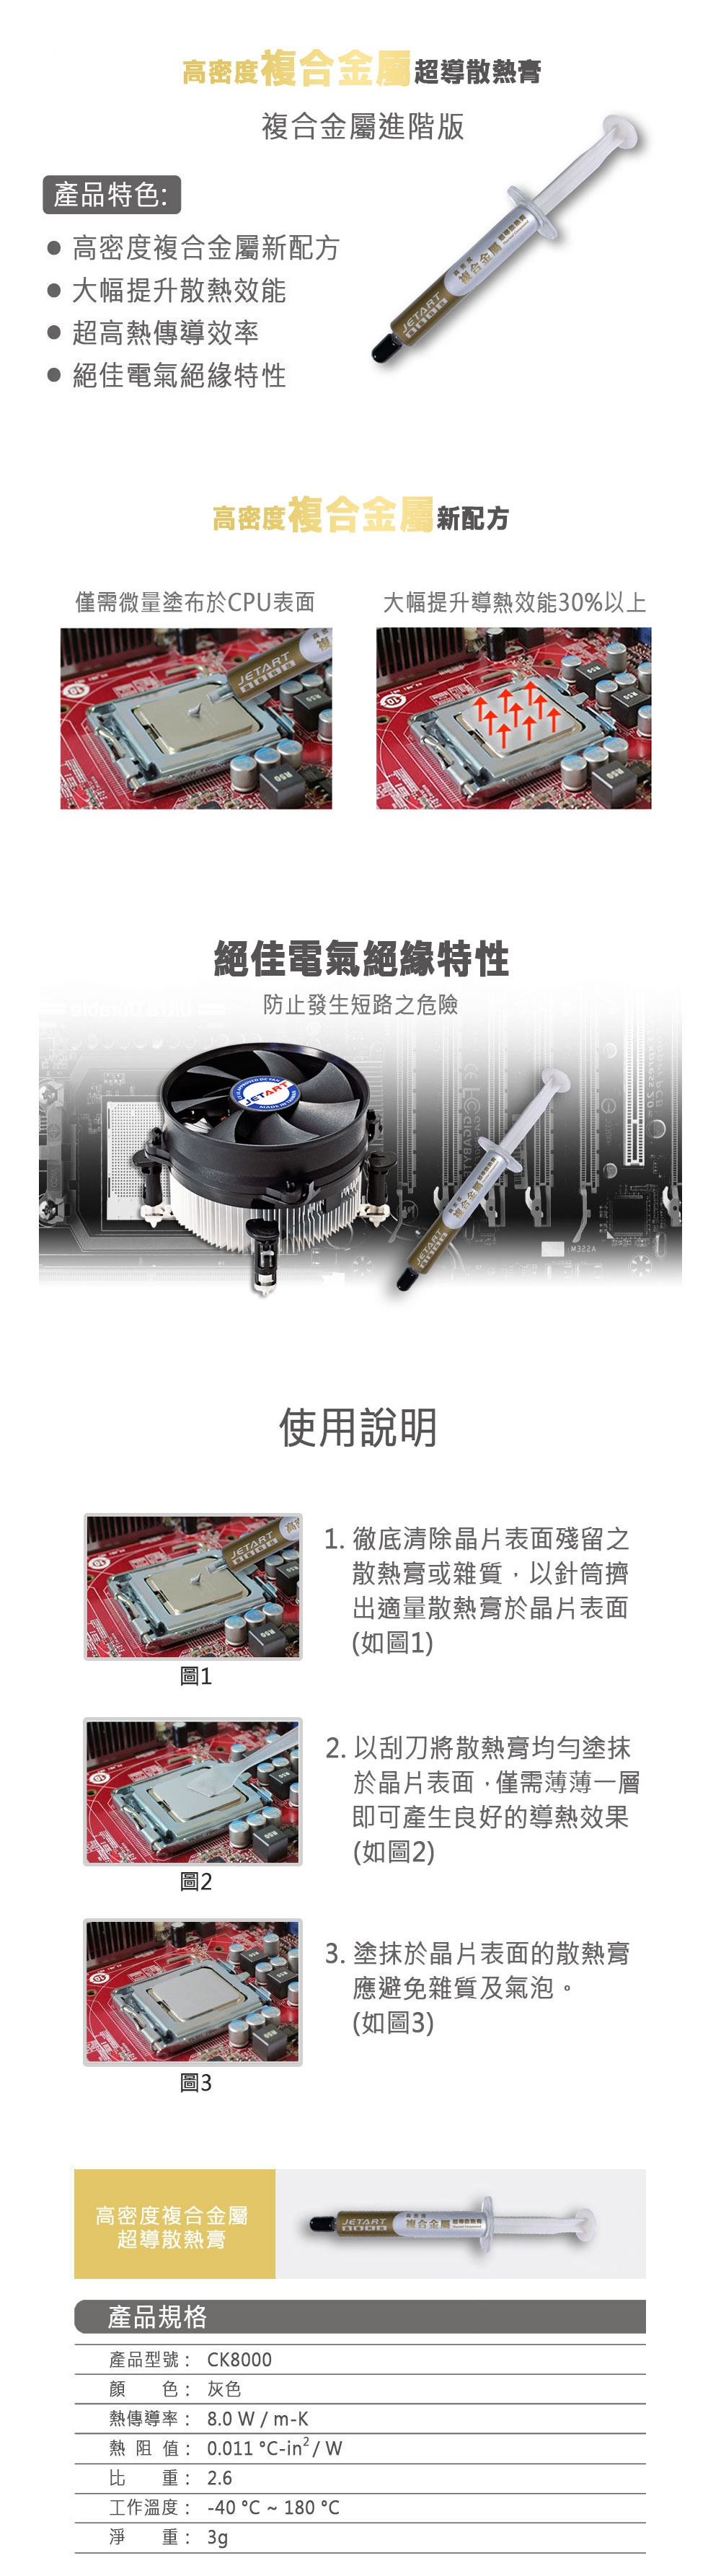 【JETART】高密度複合金屬超導散熱膏CK8000